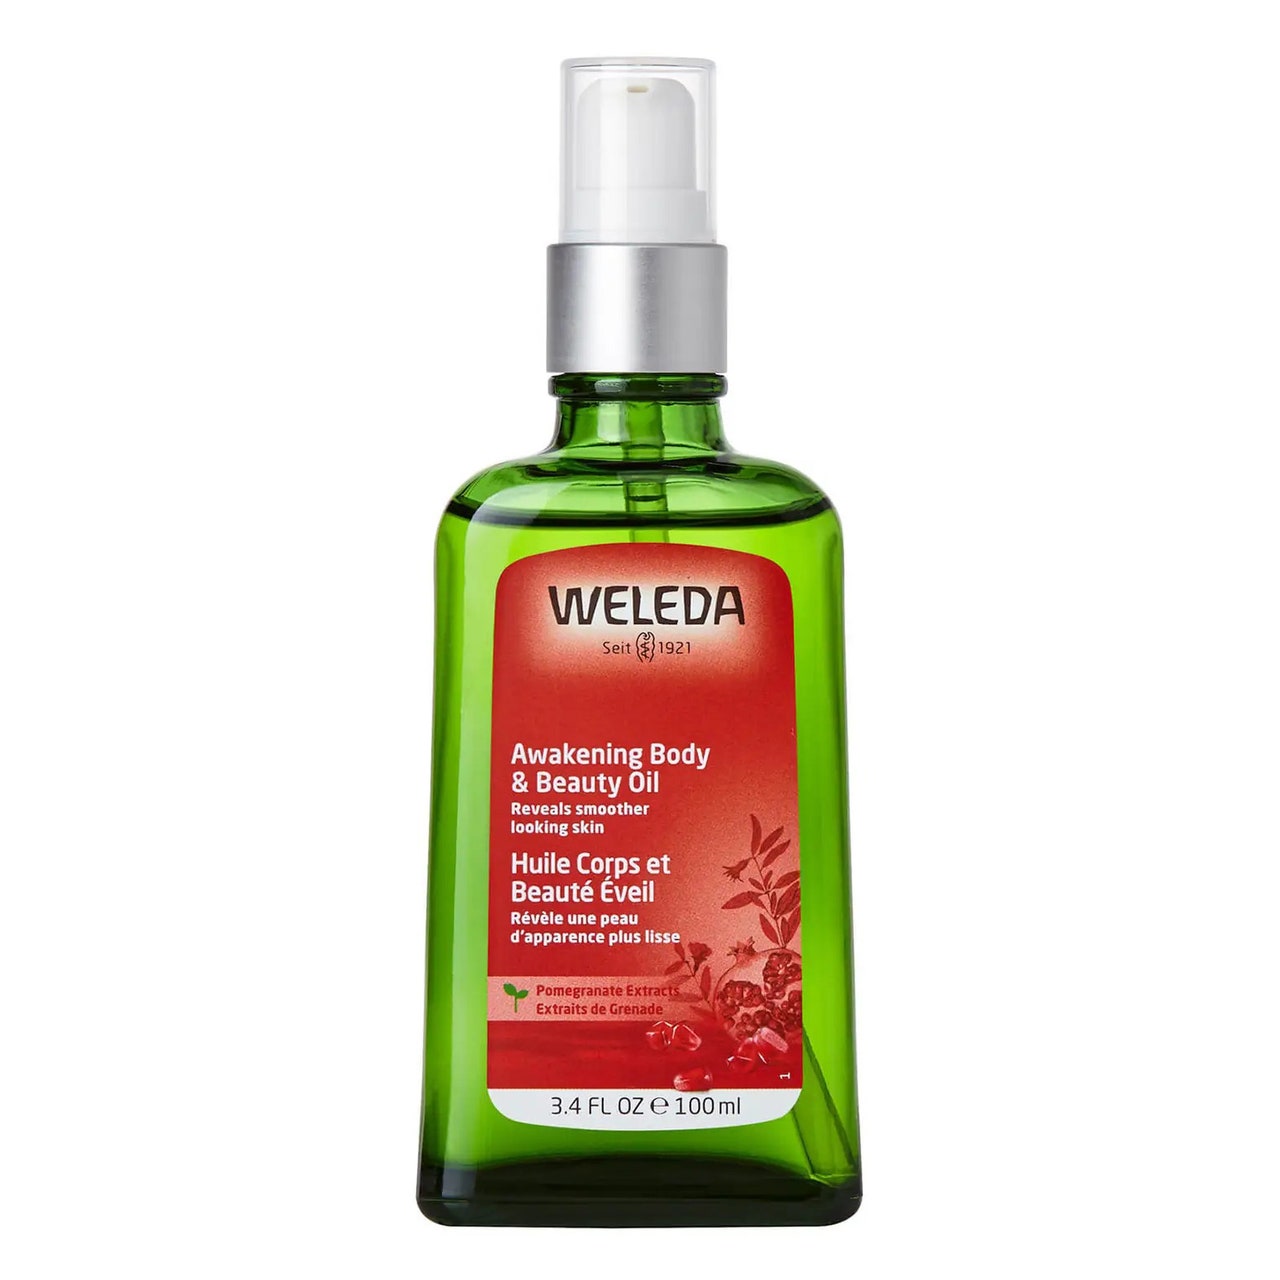 Weleda Awakening Body & Beauty Oil grüne Sprühflasche mit rotem Etikett auf weißem Hintergrund